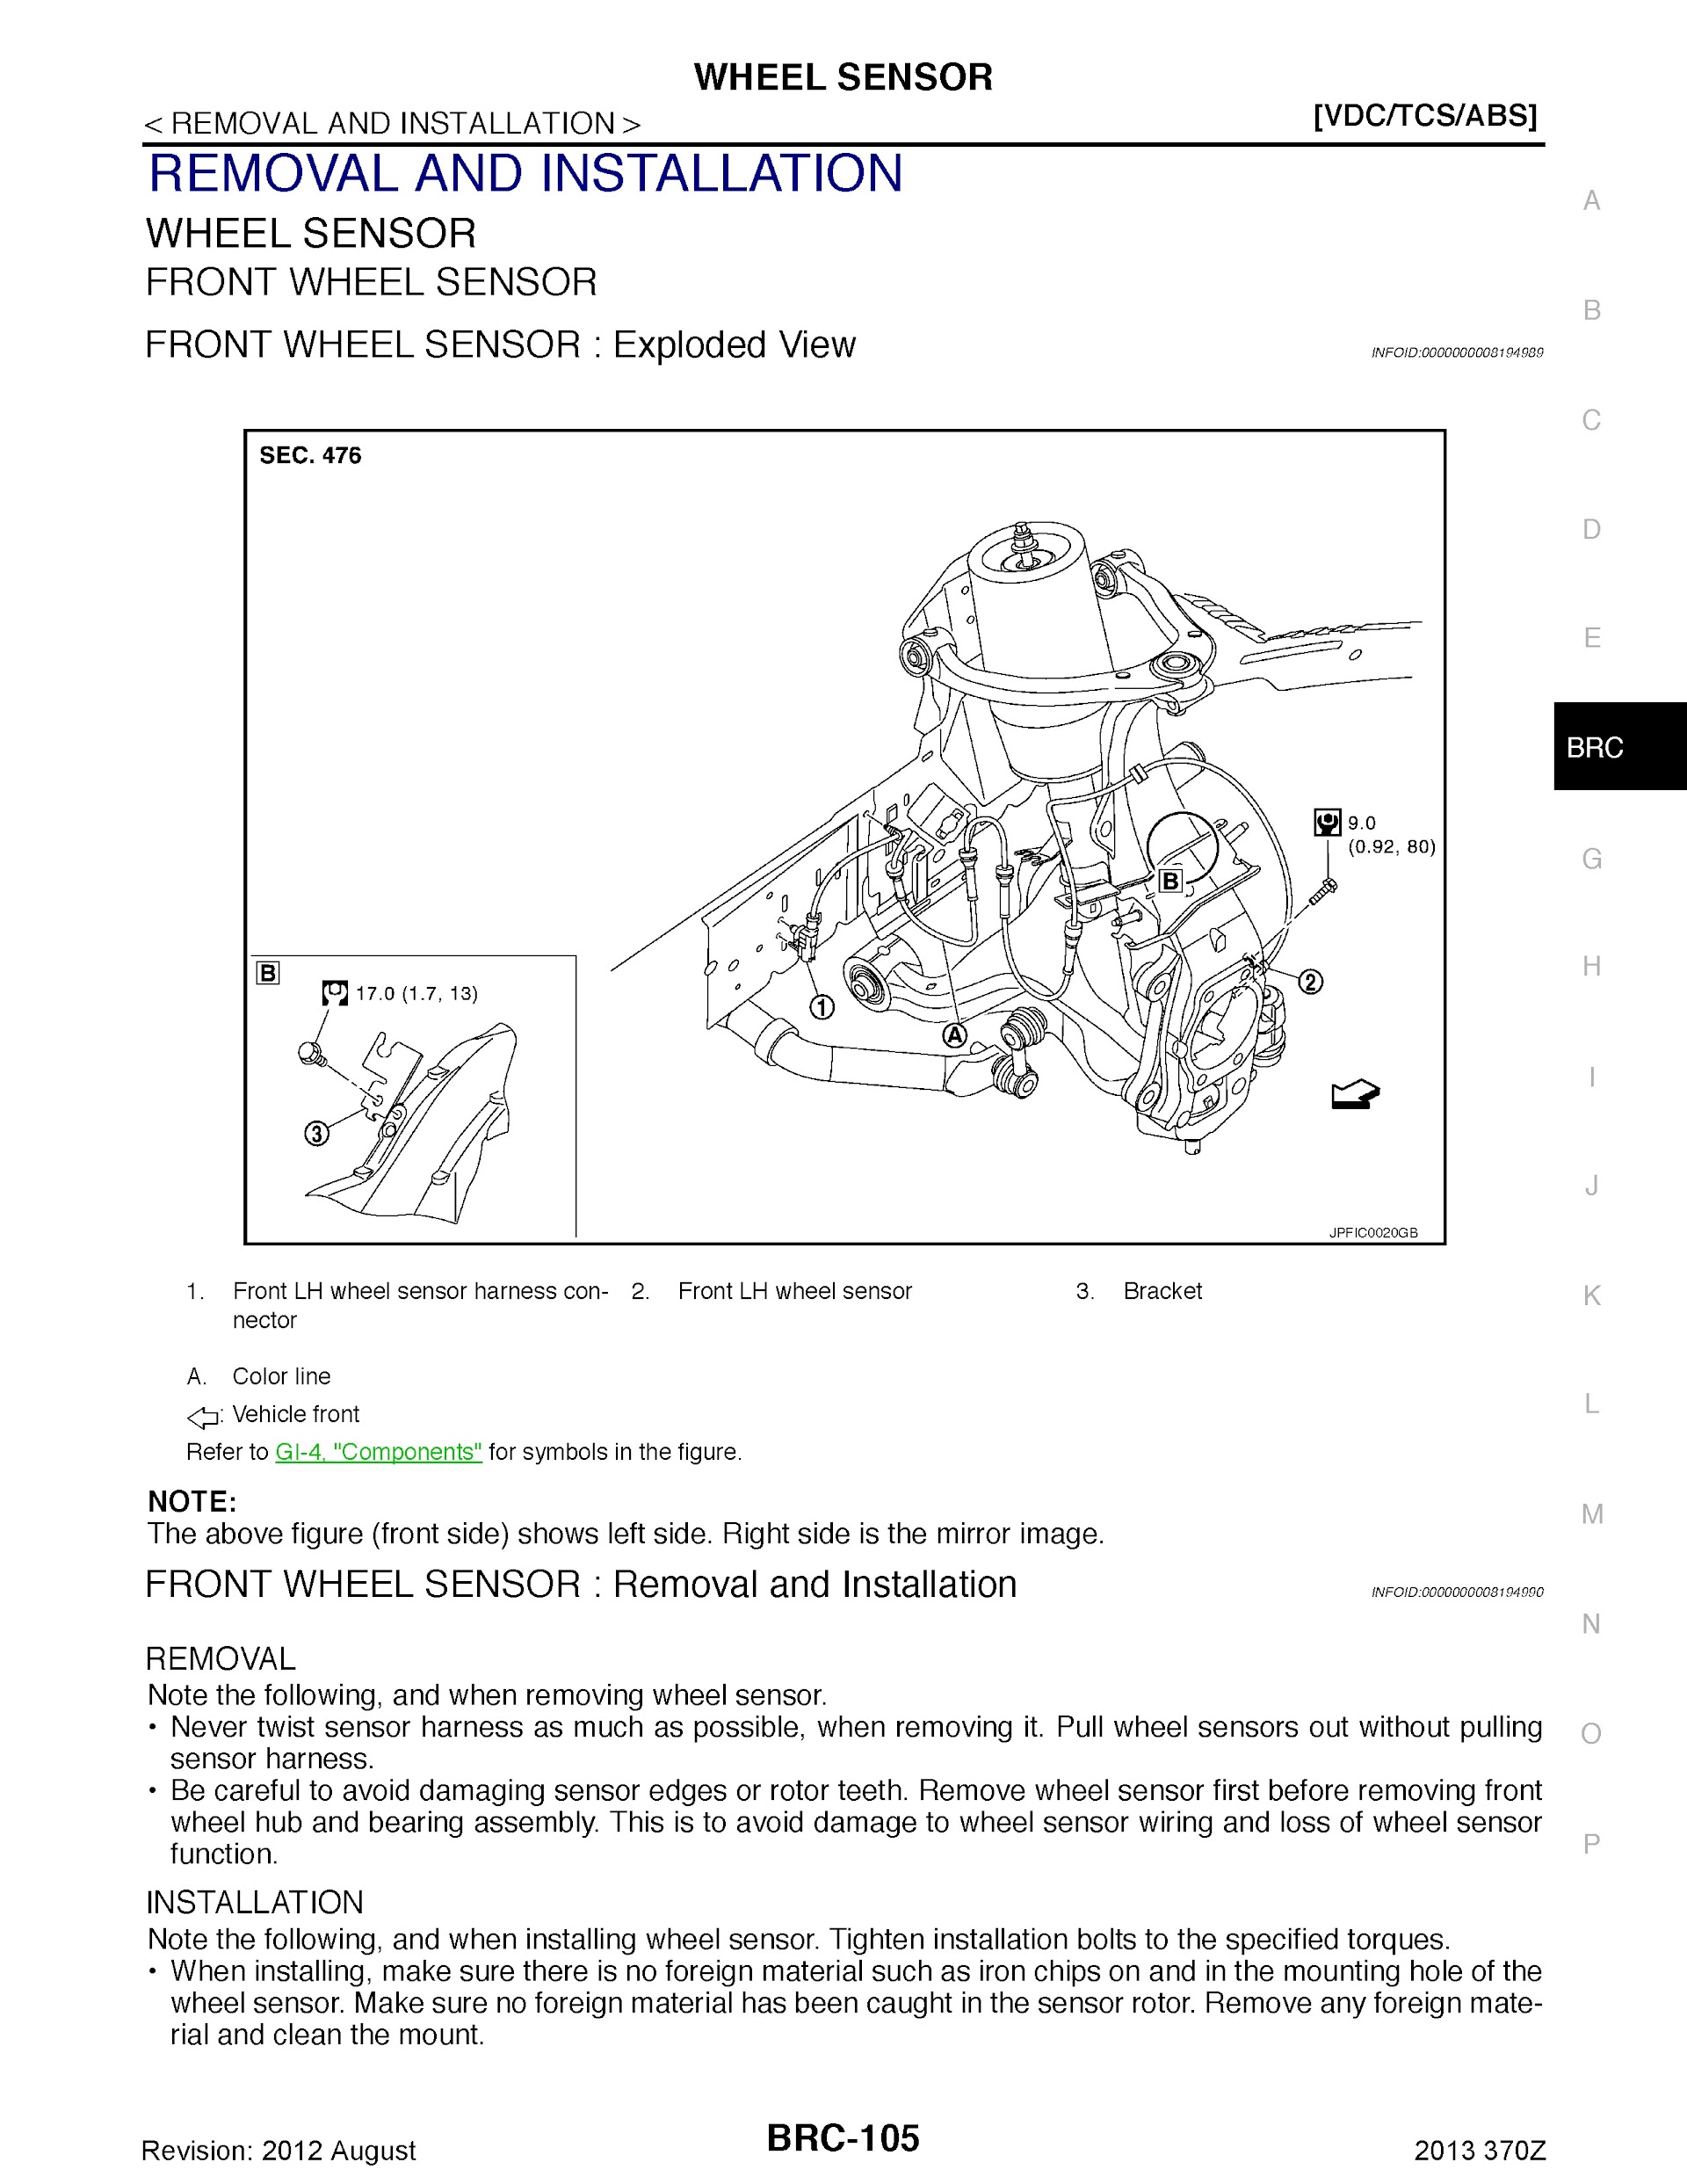 2013 Nissan 370Z Repair Manual wheel sensor